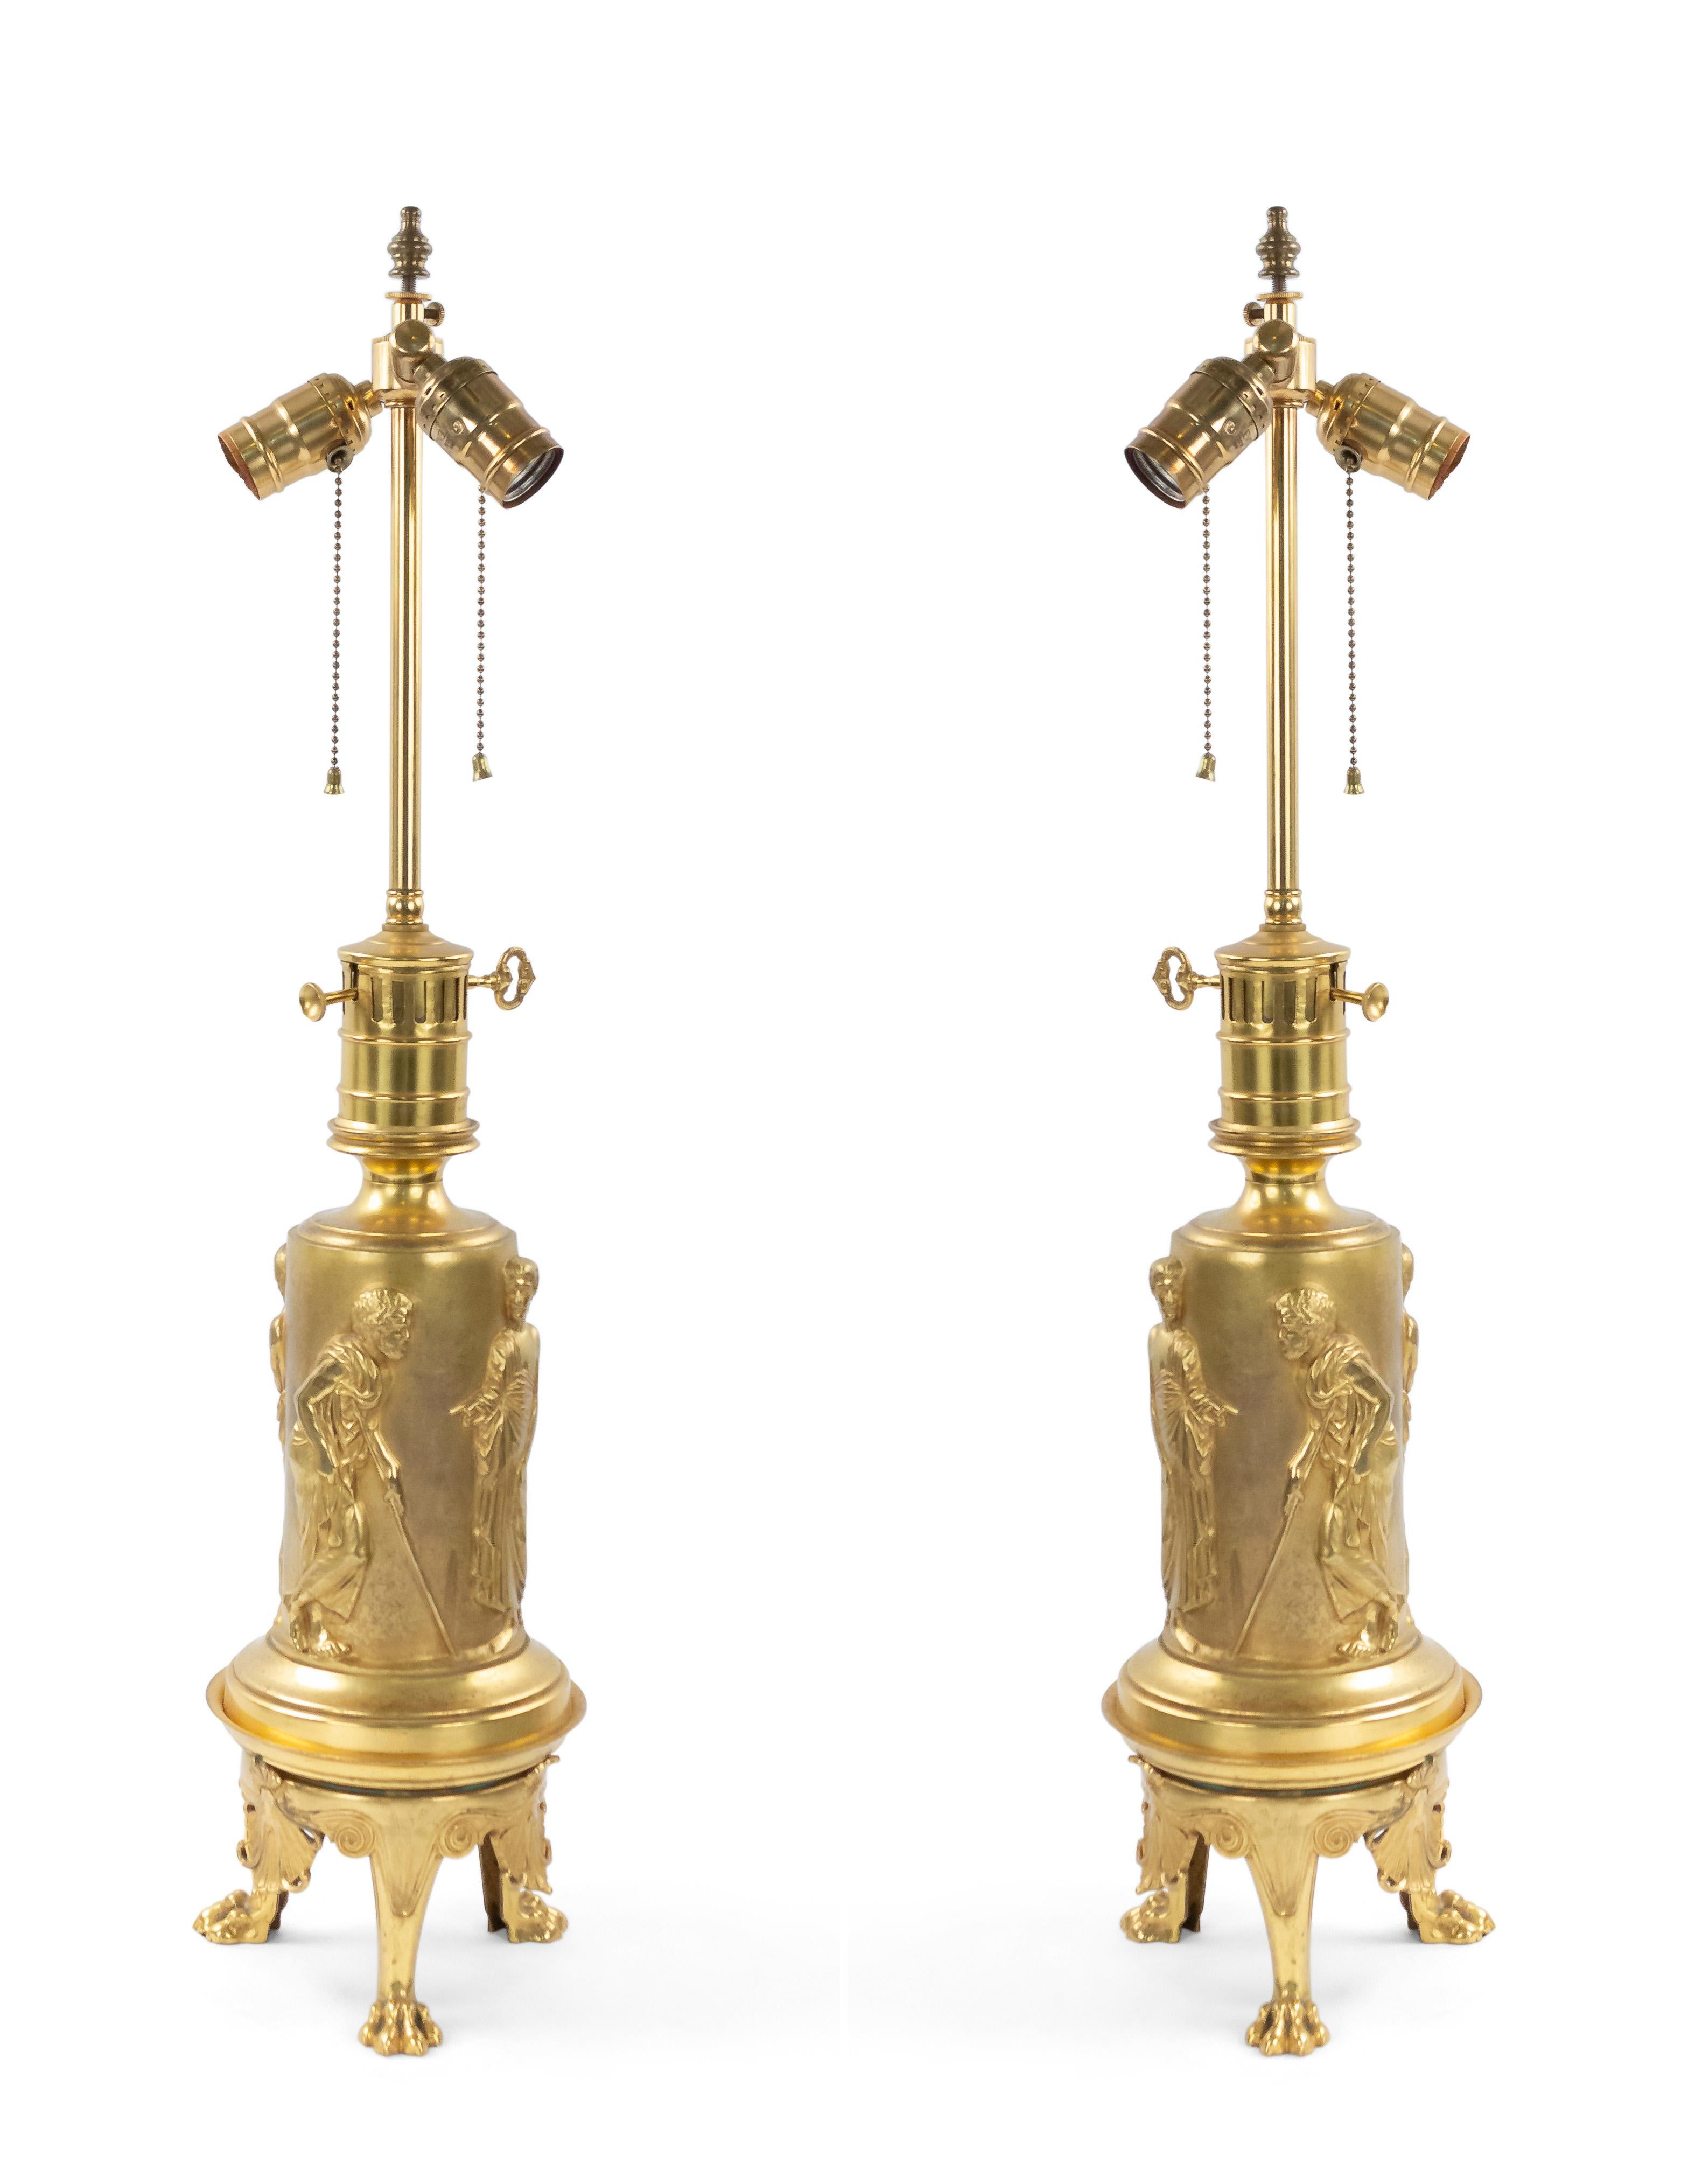 Paire de lampes de table en bronze doré de style Regency anglais (19e siècle), à l'origine pour l'huile, avec des figures classiques en relief sur une base à 3 pieds (VENDU COMME Paire).
